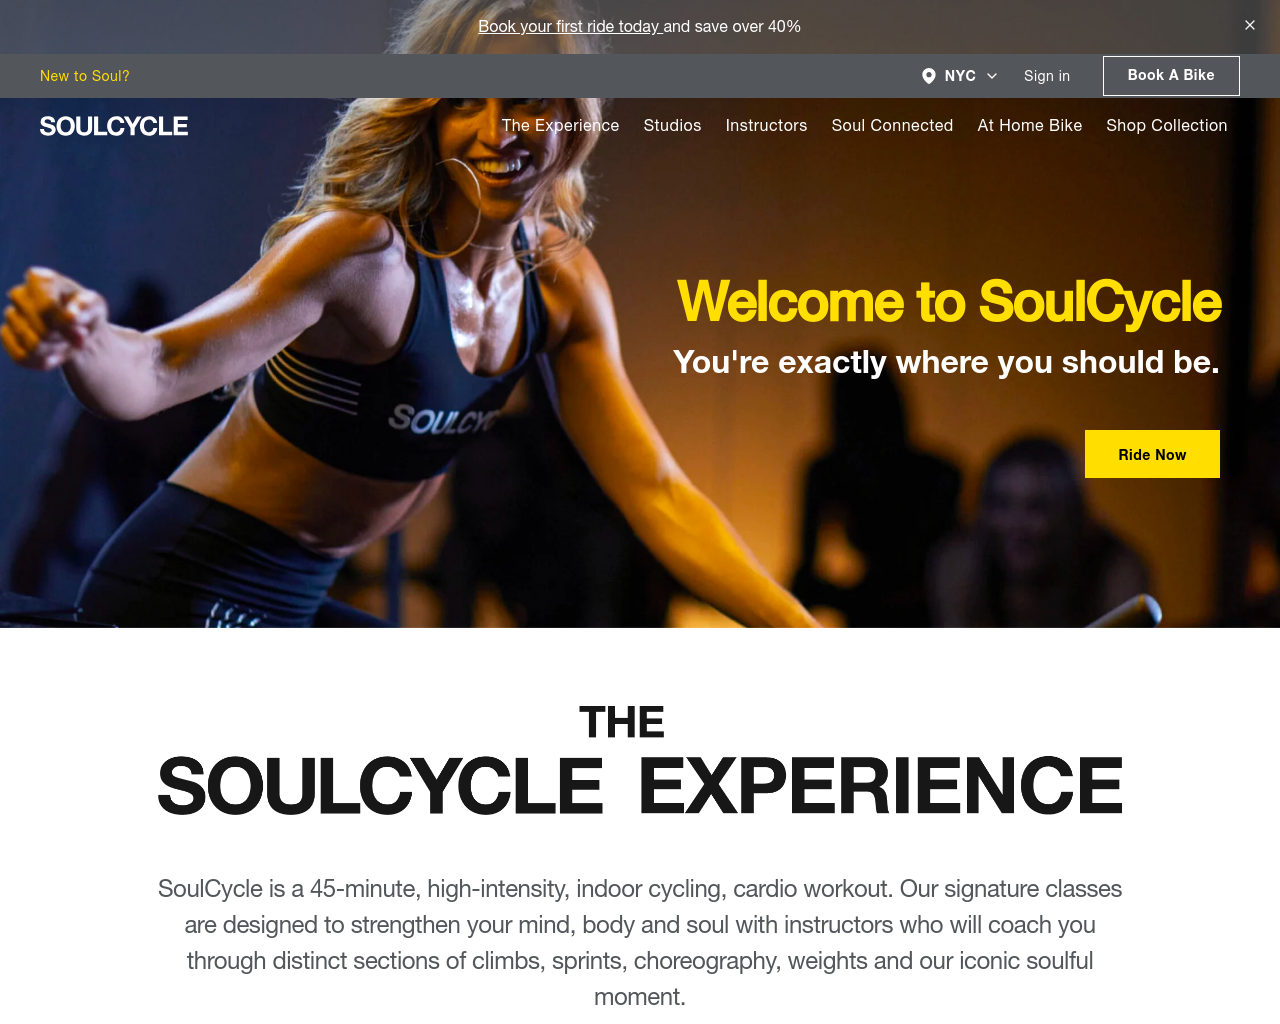 soul-cycle.com